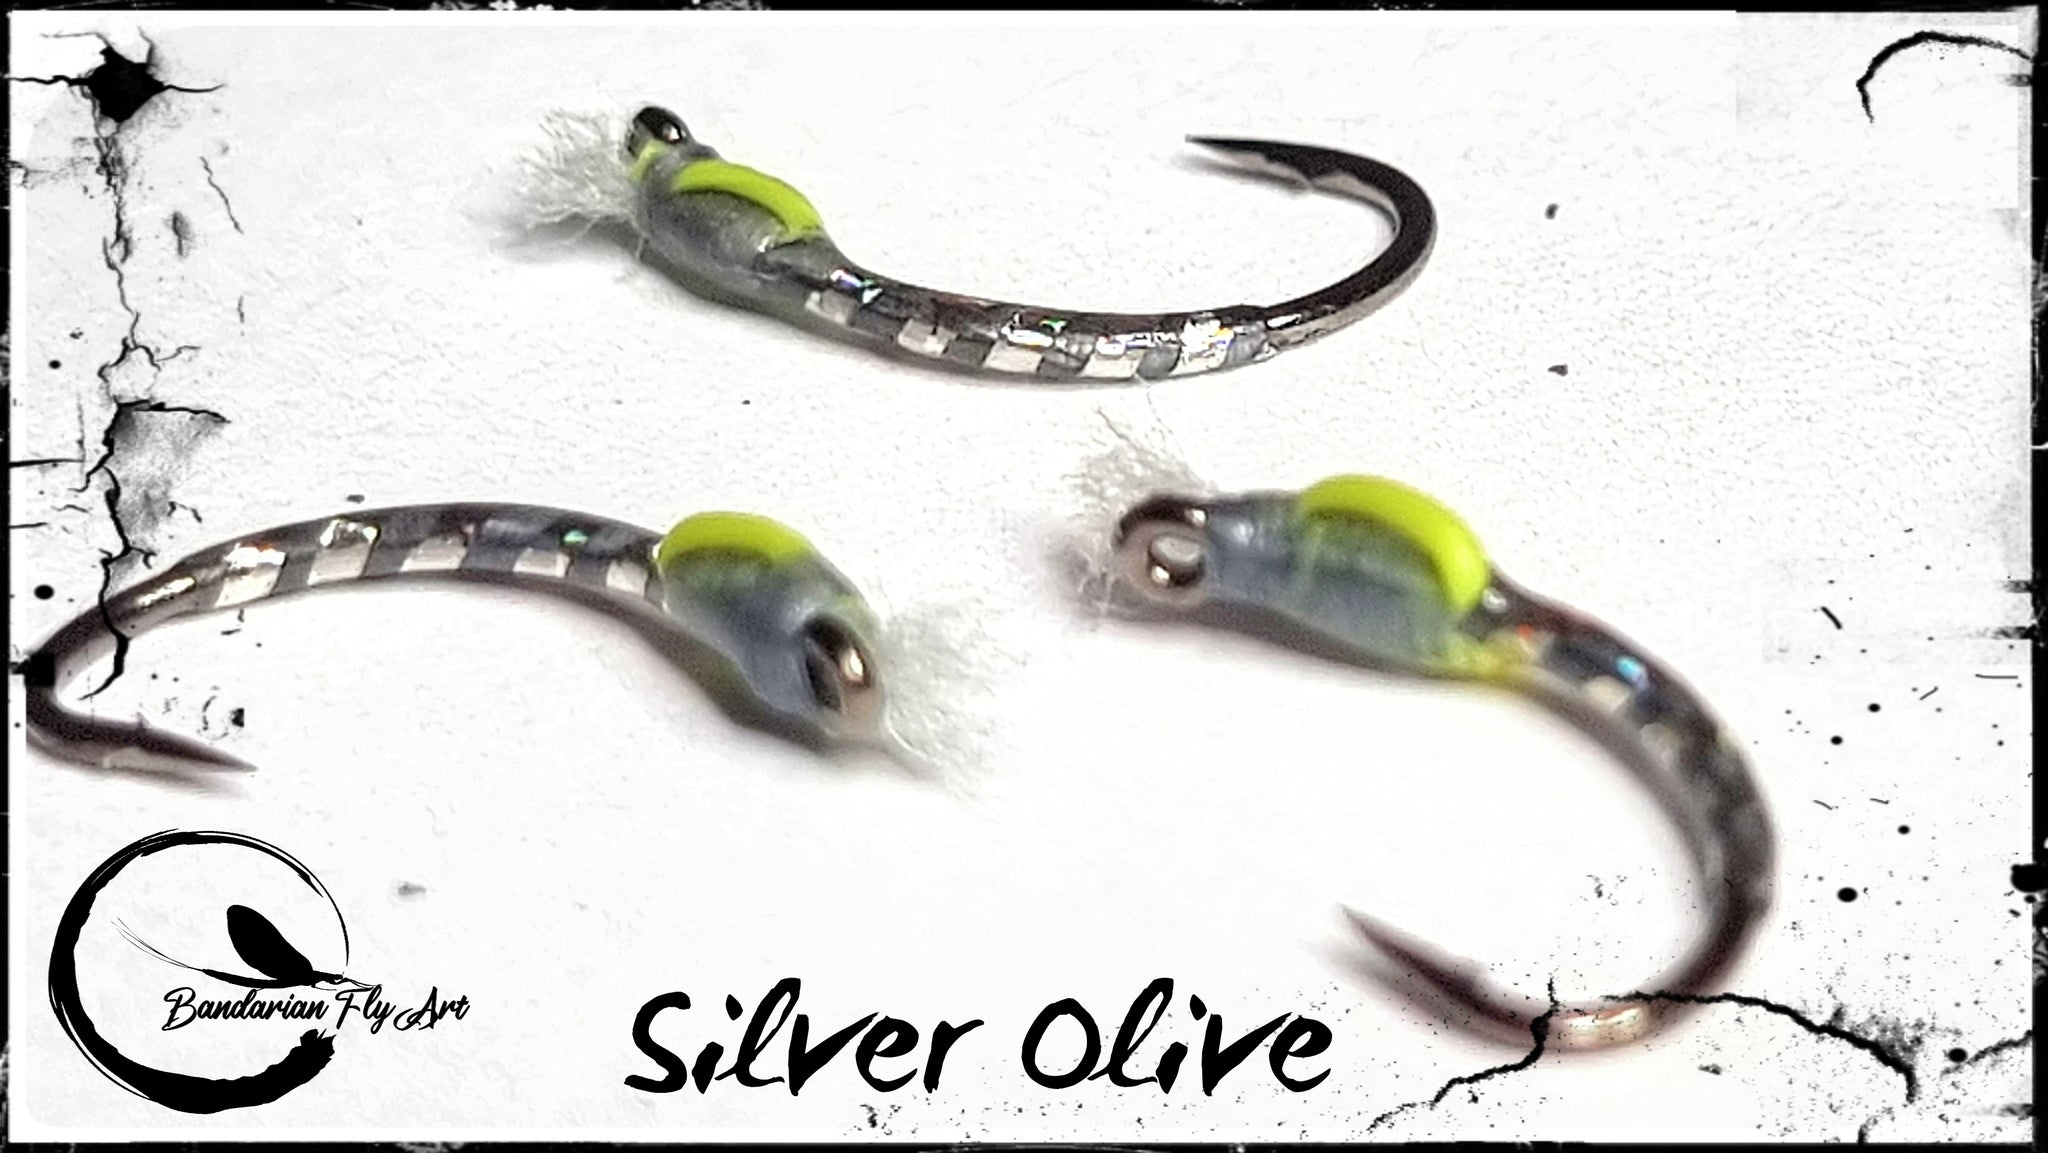 Buzzer - Silver Olive oförtyngd